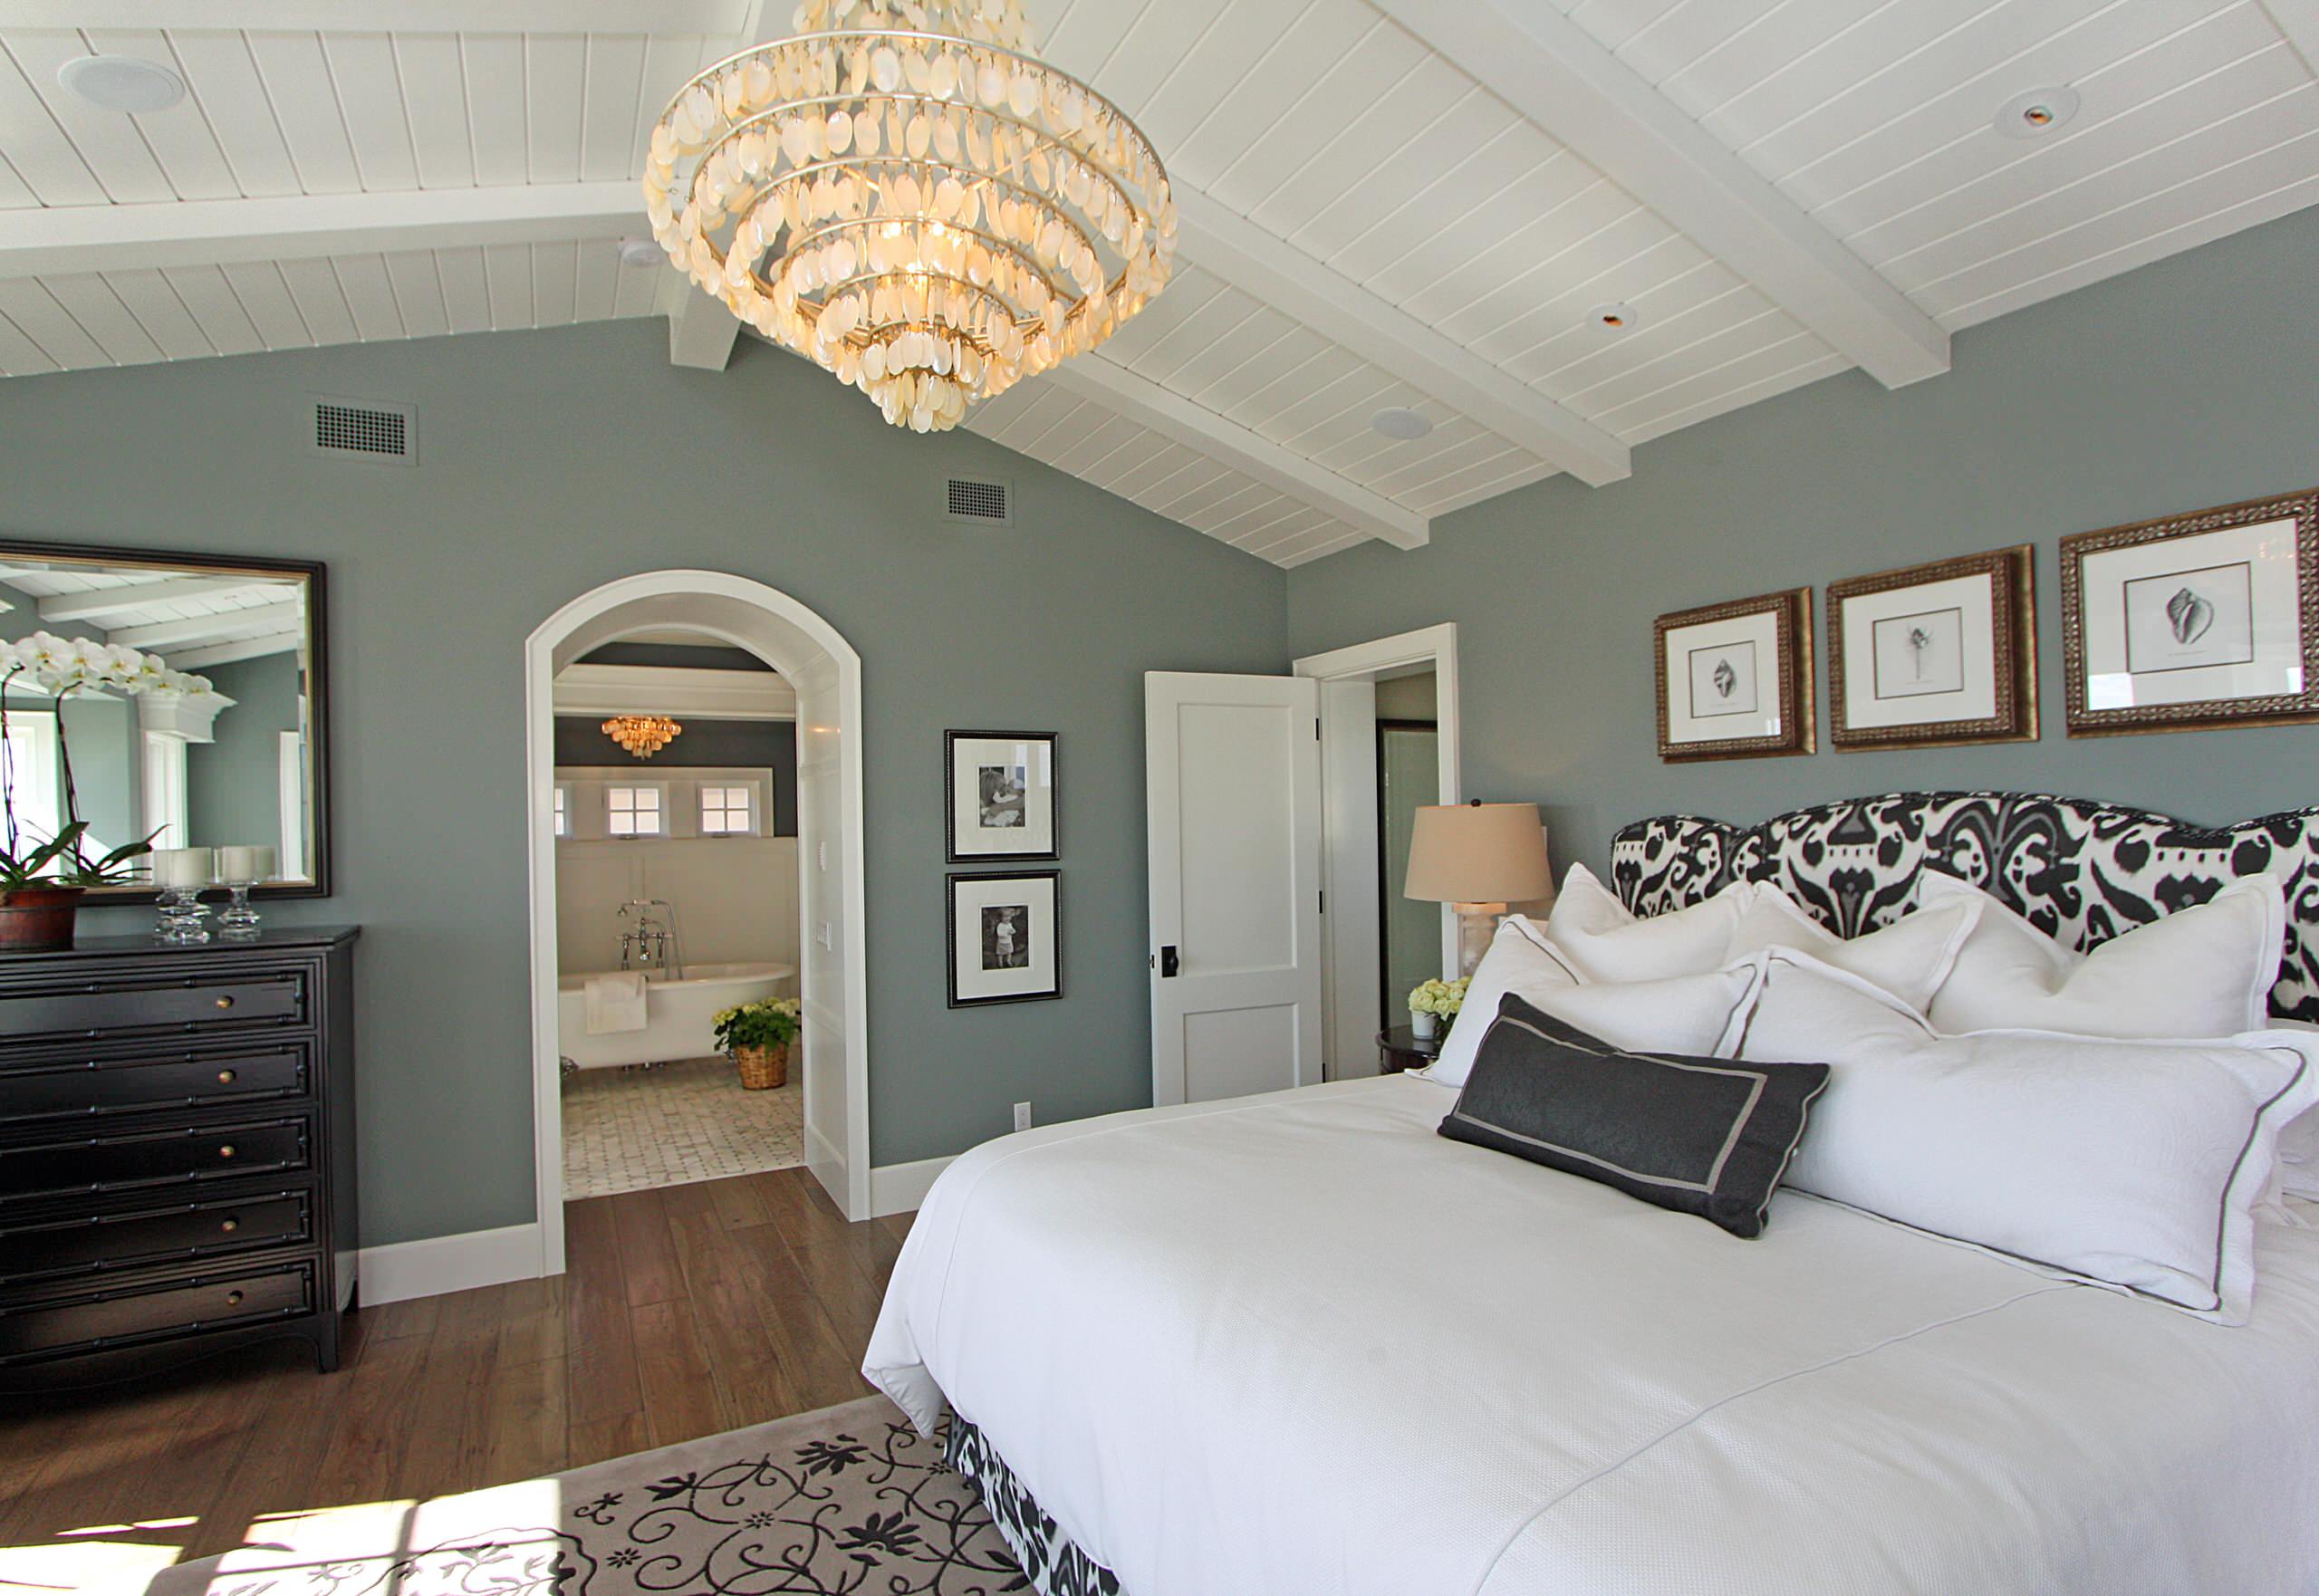 Hampton Style Bedroom - Photos & Ideas | Houzz